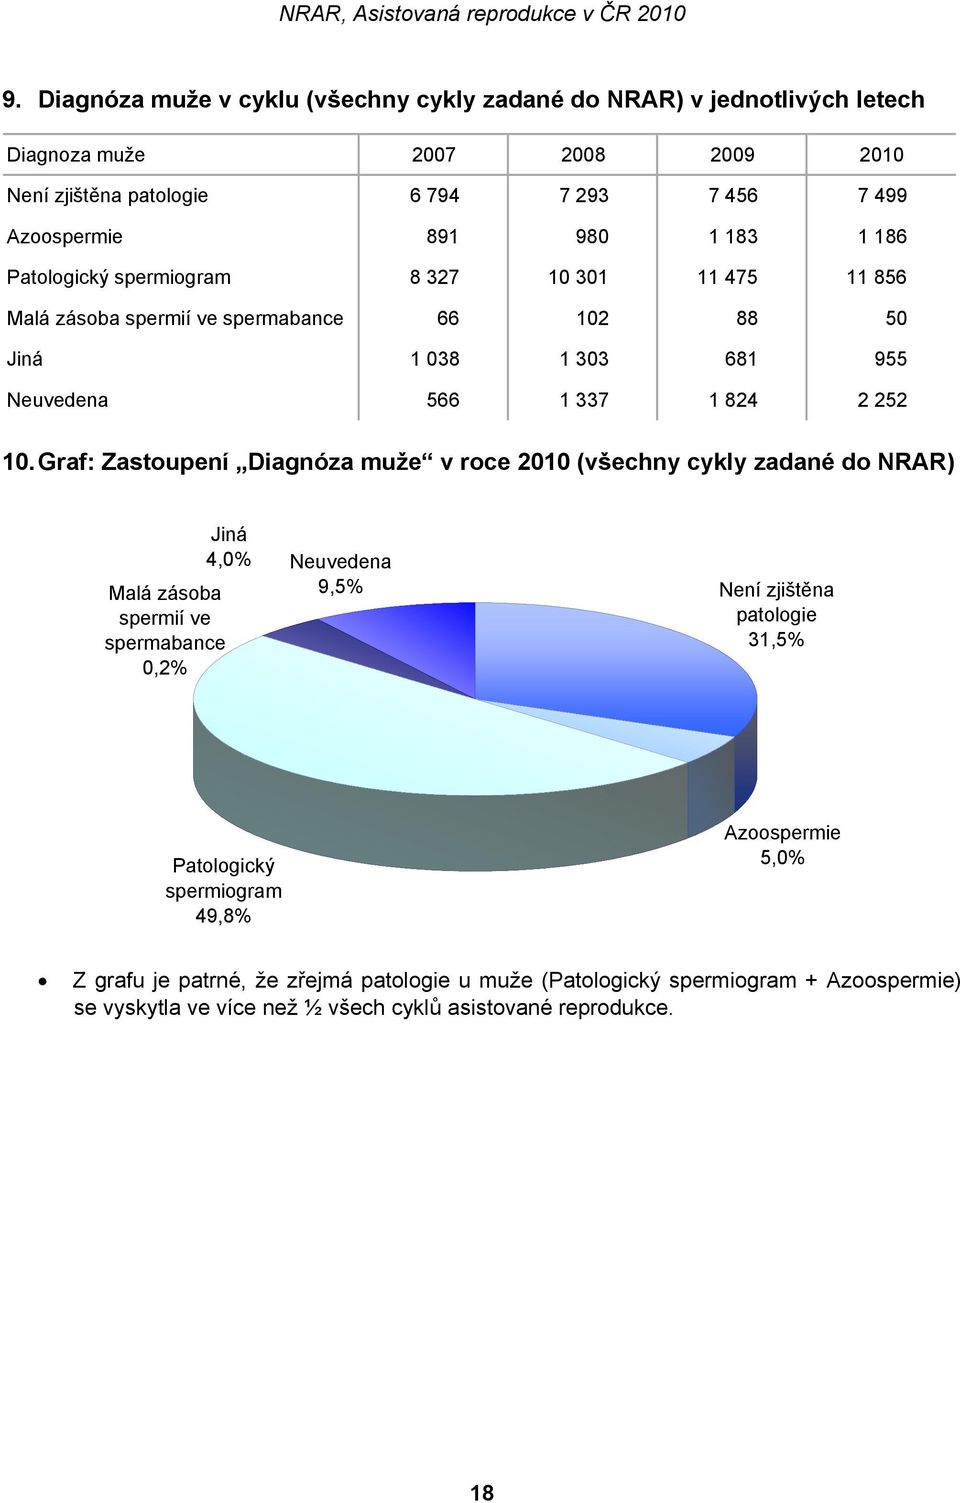 Graf: Zastoupení Diagnóza muže v roce 2010 (všechny cykly zadané do NRAR) Jiná 4,0% Neuvedena Malá zásoba 9,5% spermií ve spermabance 0,2% Není zjištěna patologie 31,5%